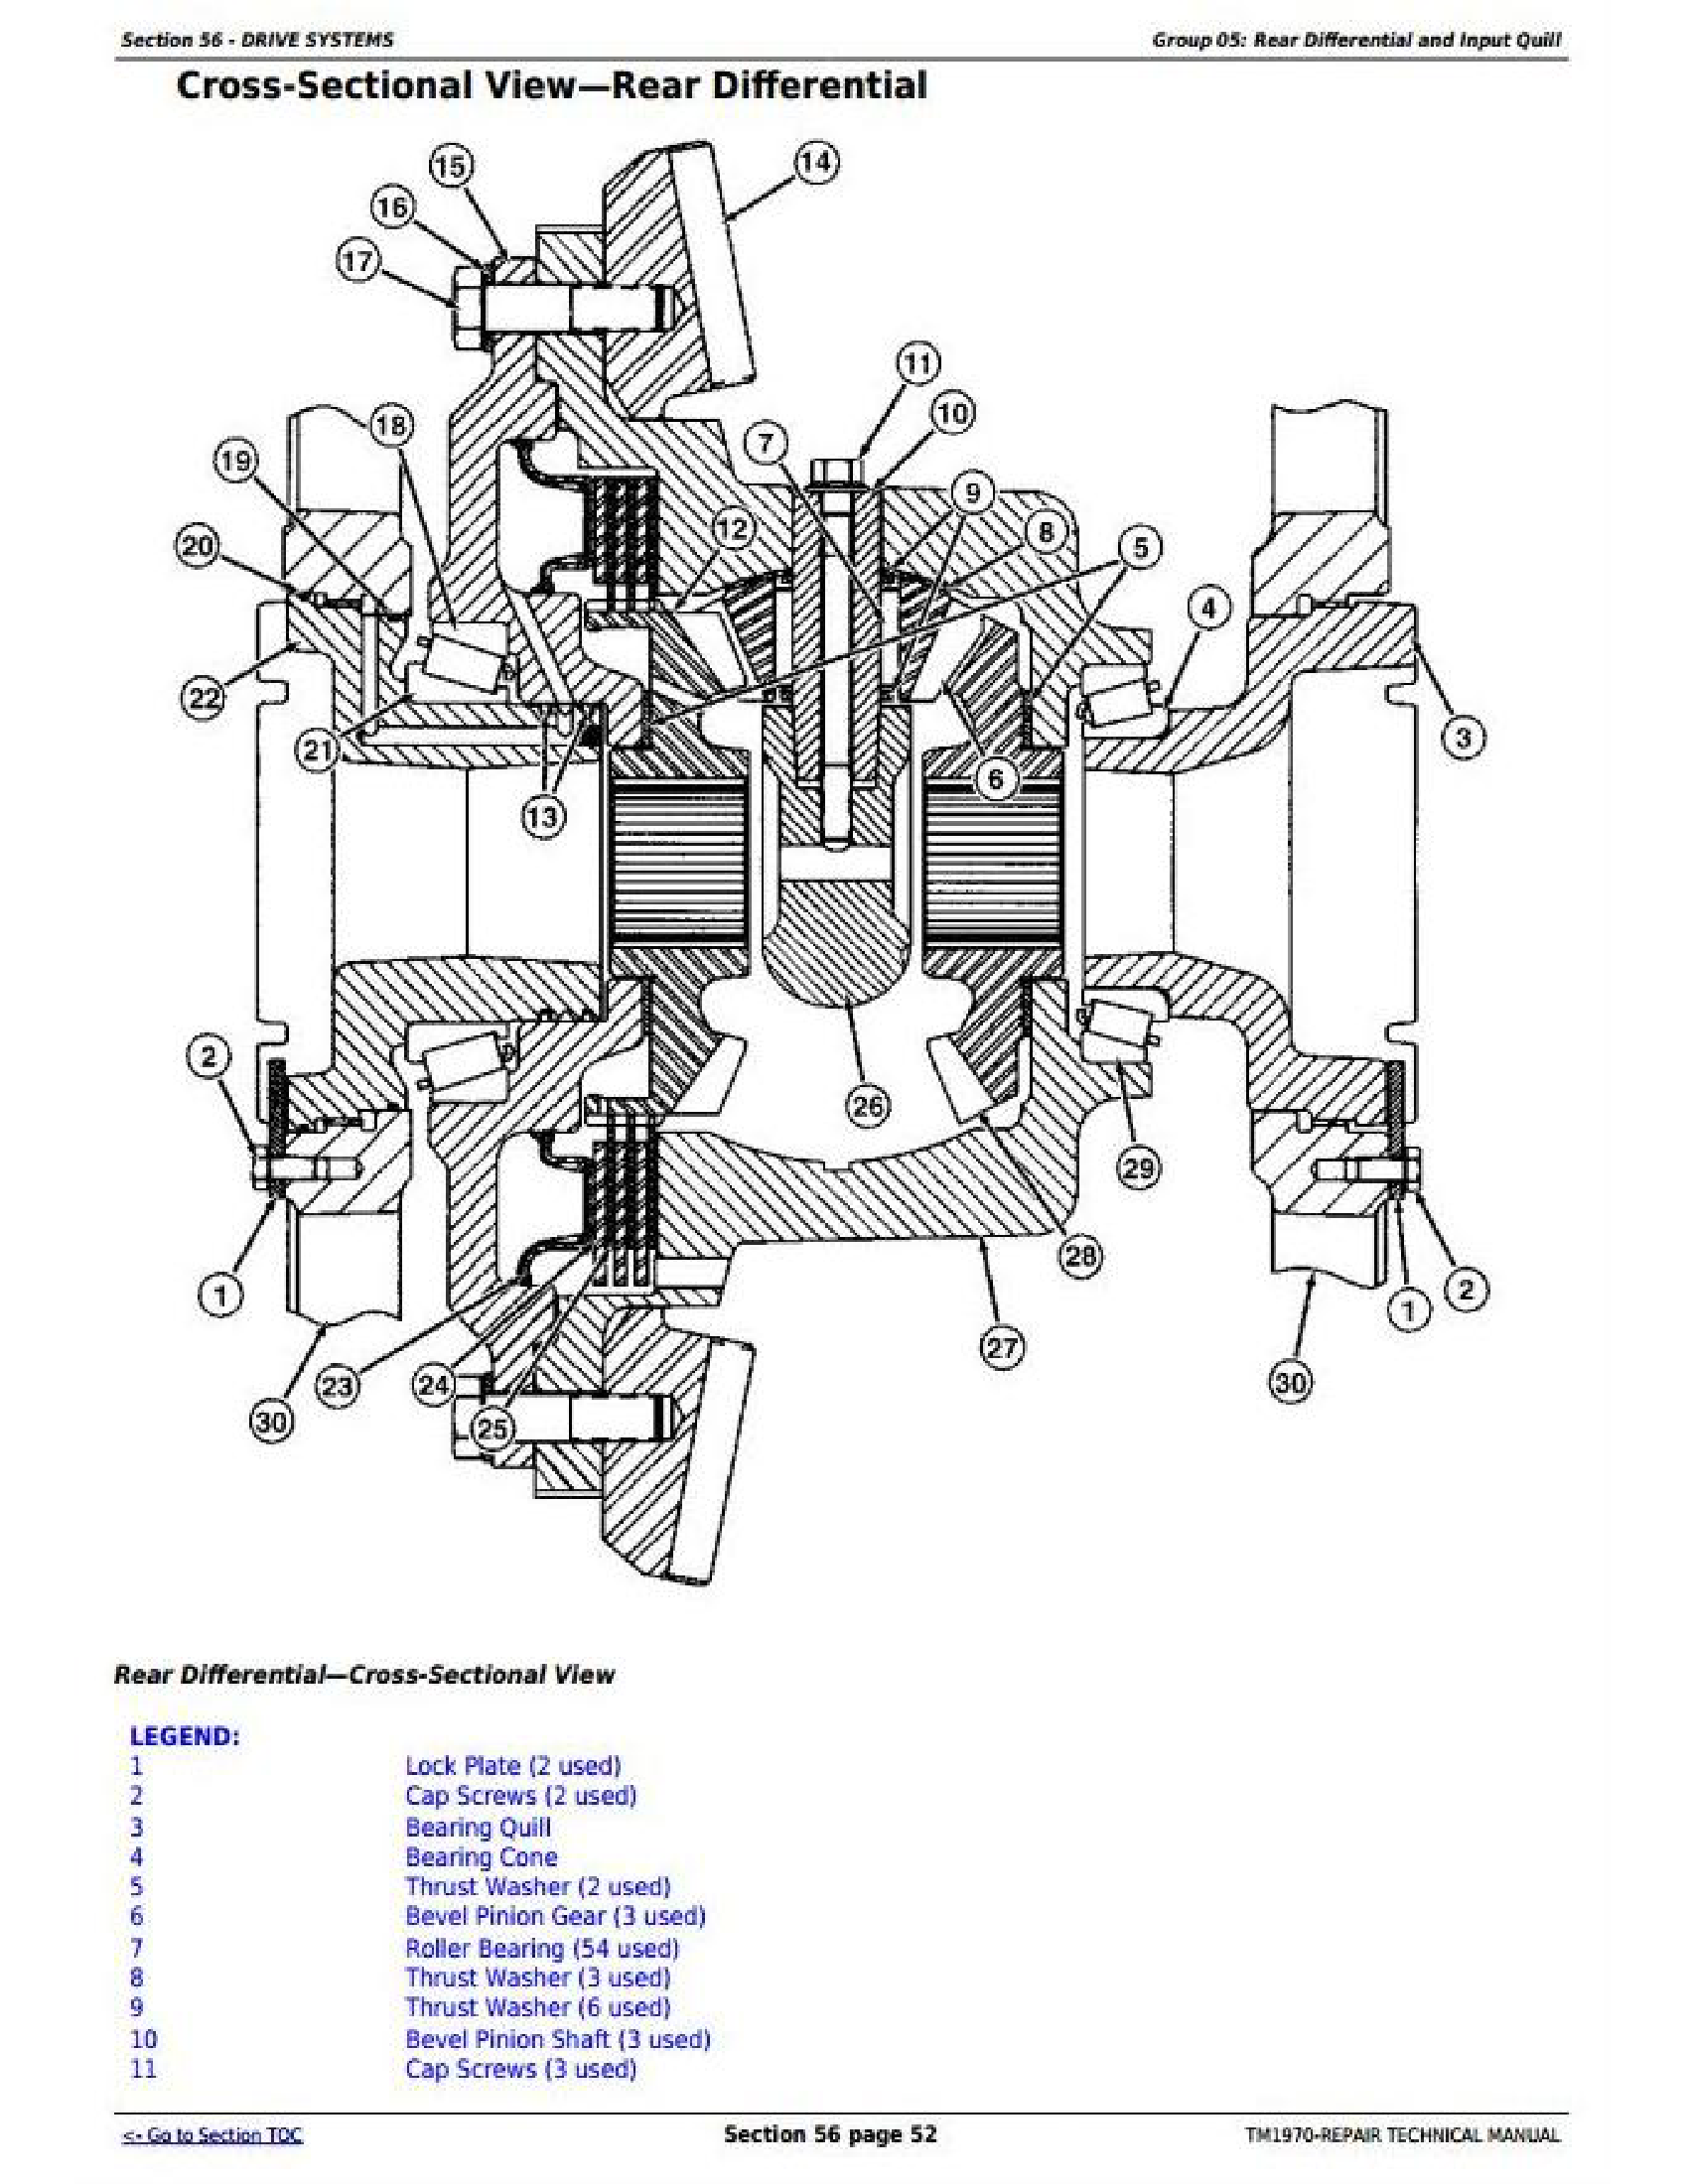 John Deere 659 manual pdf